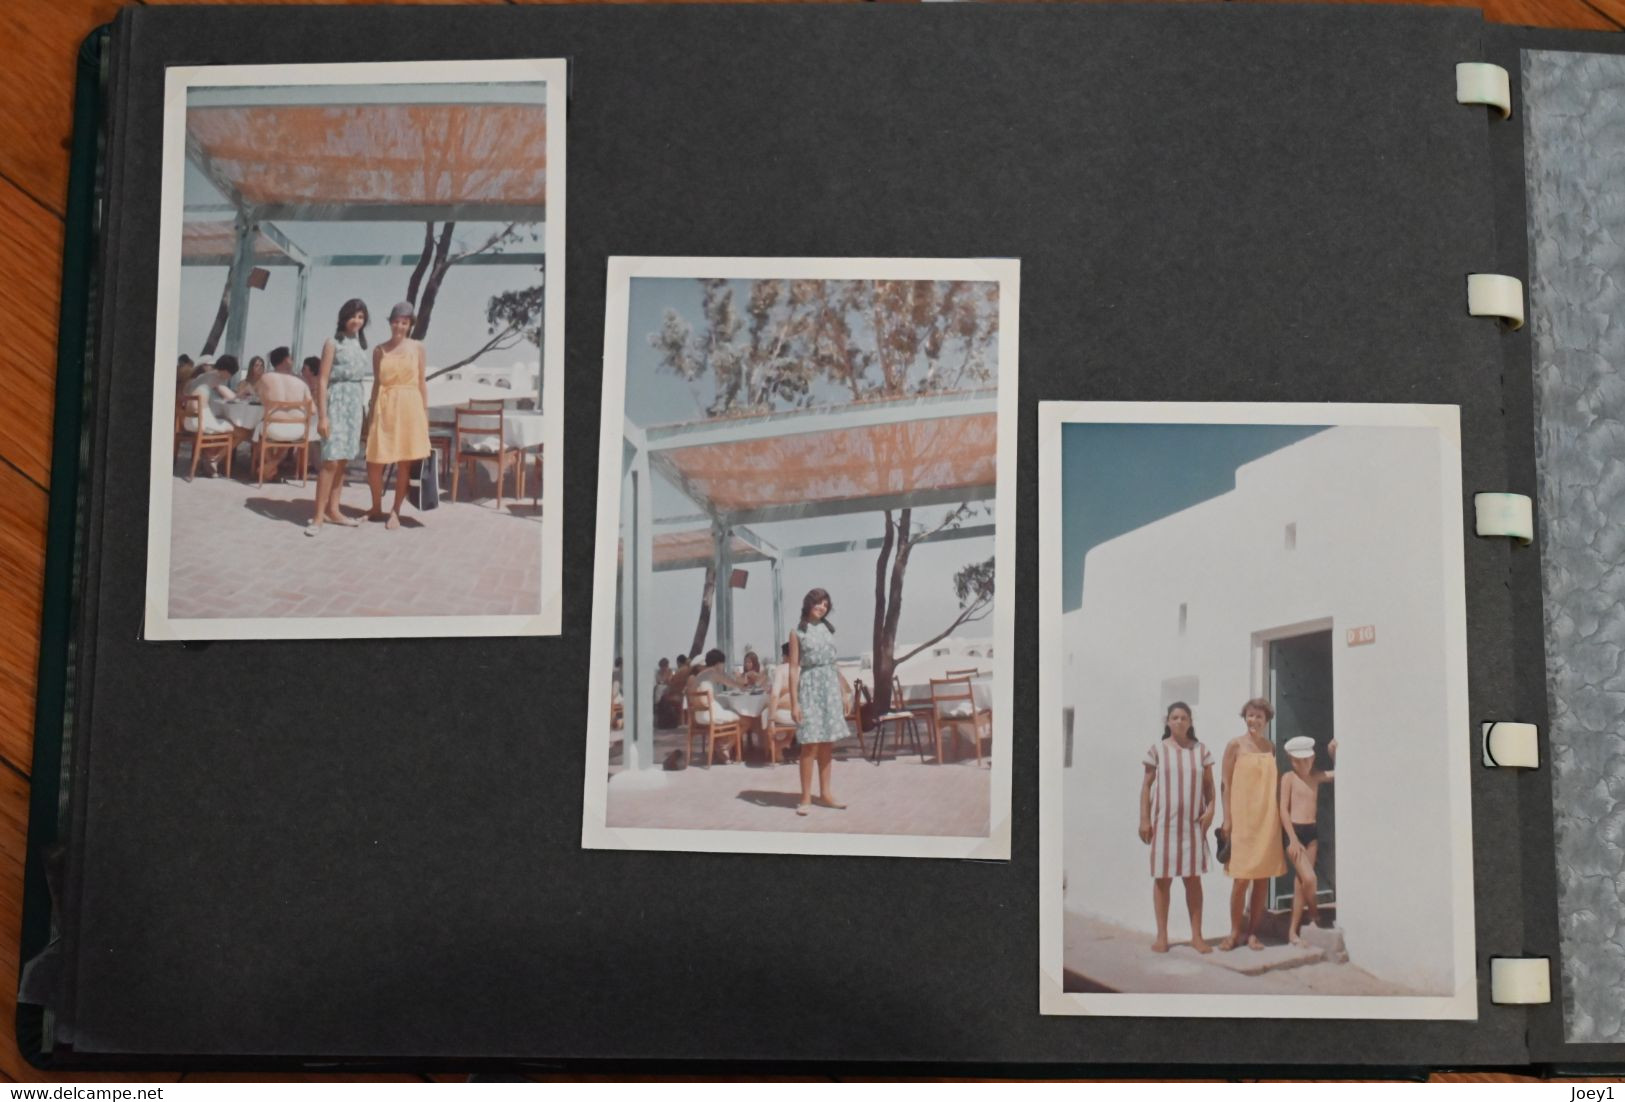 1 lot de 3 Albums photos vacances couleurs années 60 Europe, Afrique du nord, Liban.160 photos